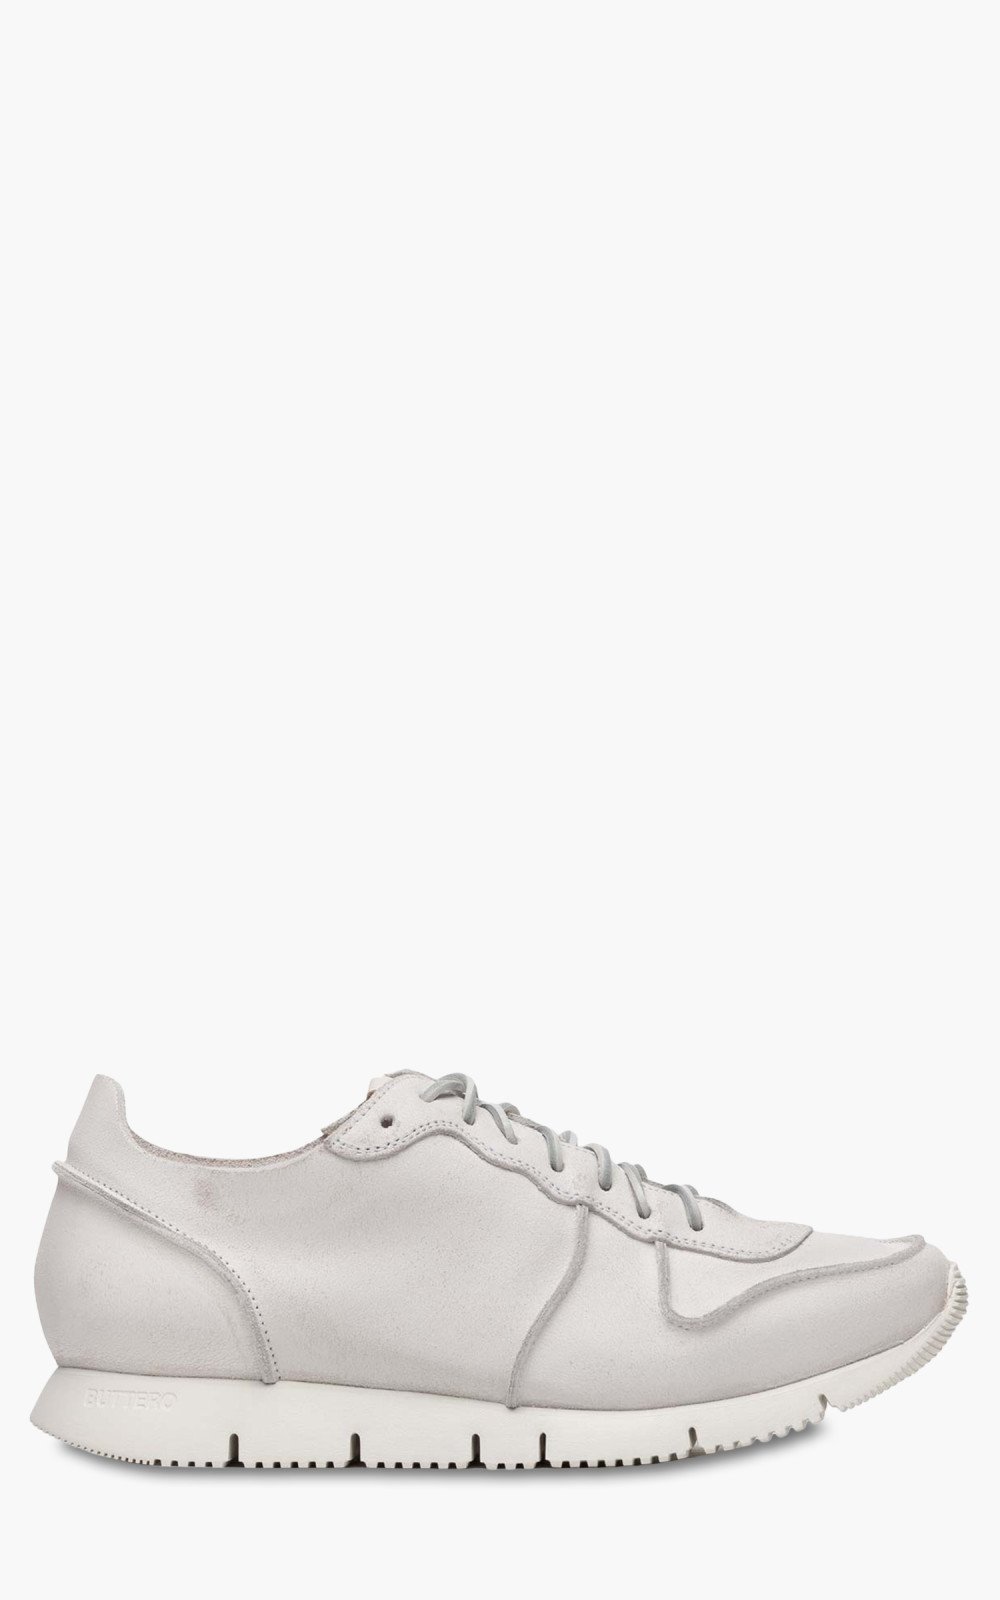 Buttero B9710 Carrera Sneaker Cracked White | Cultizm